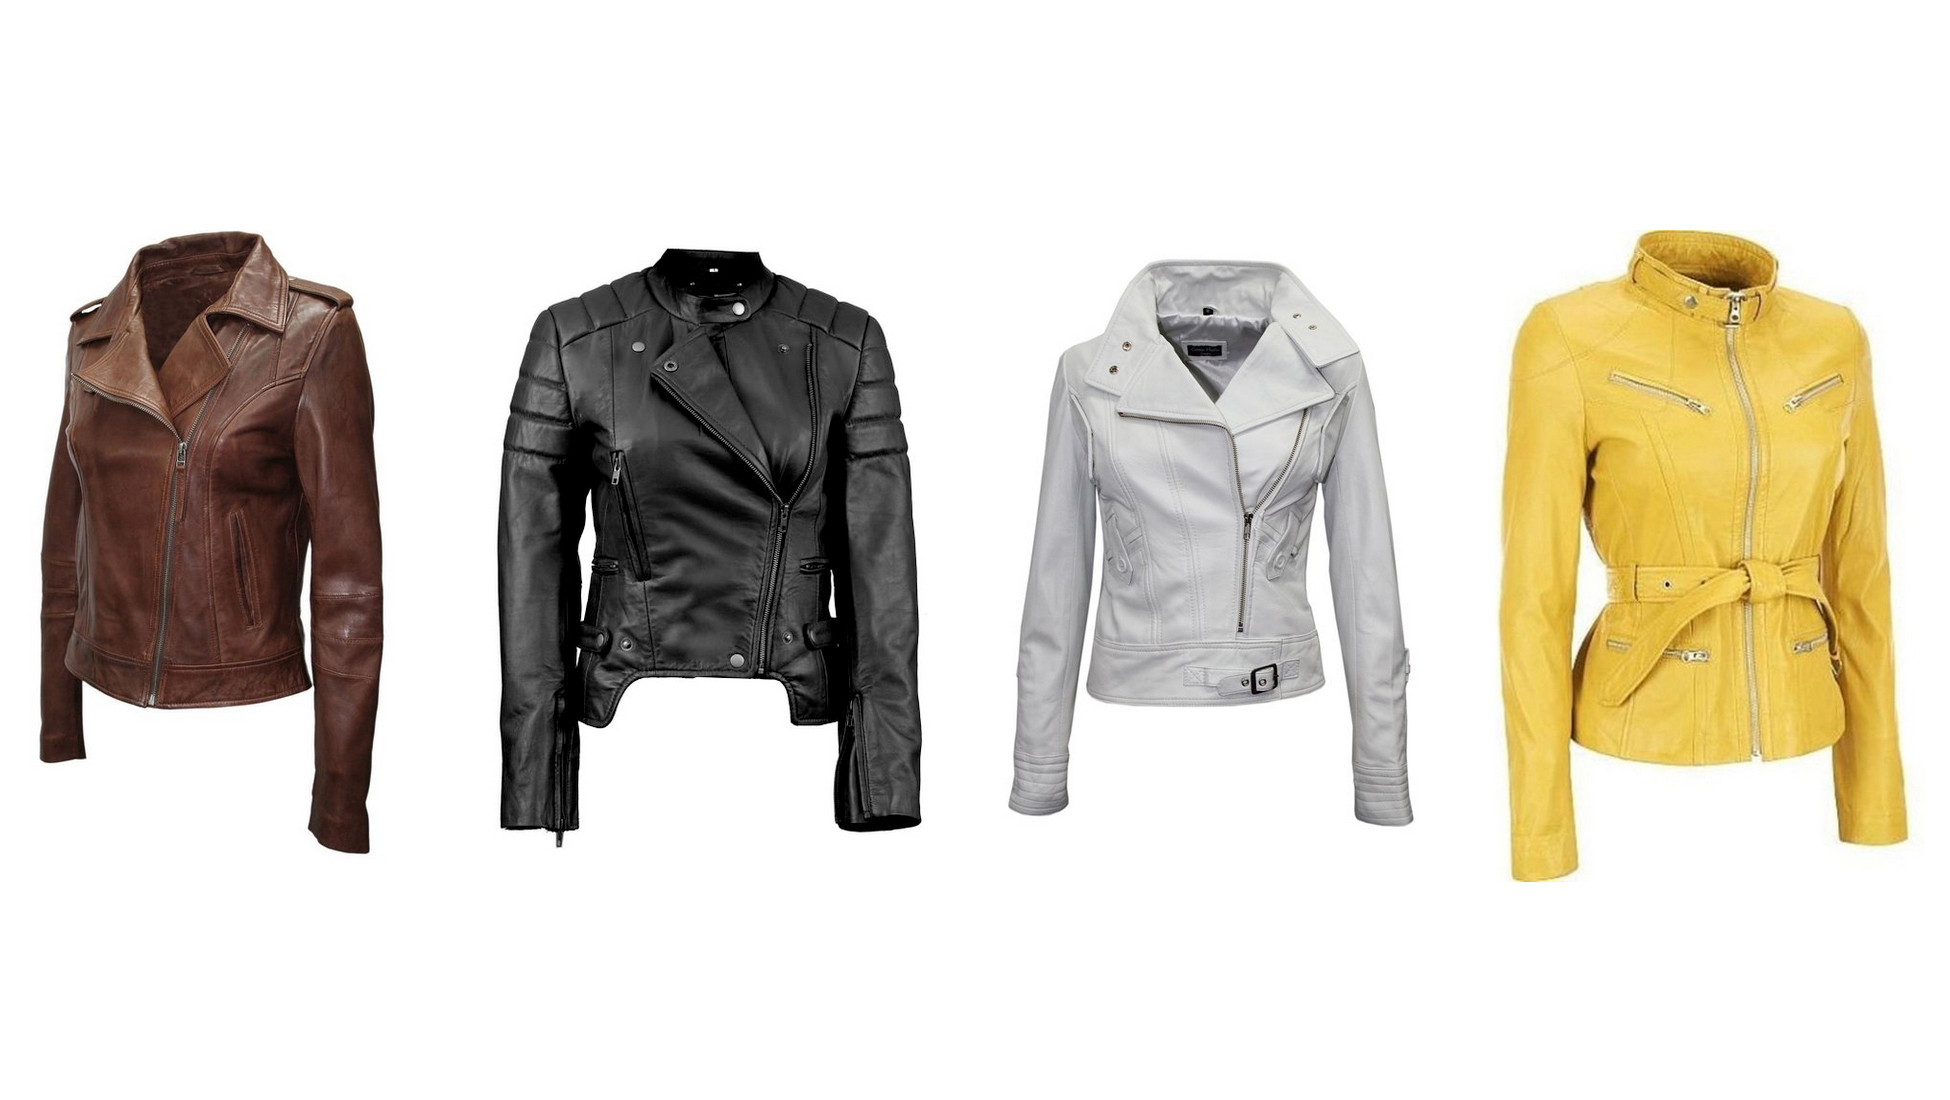 Women Stylish Motorcycle Biker Genuine Lambskin Leather Jacket for Women Brown